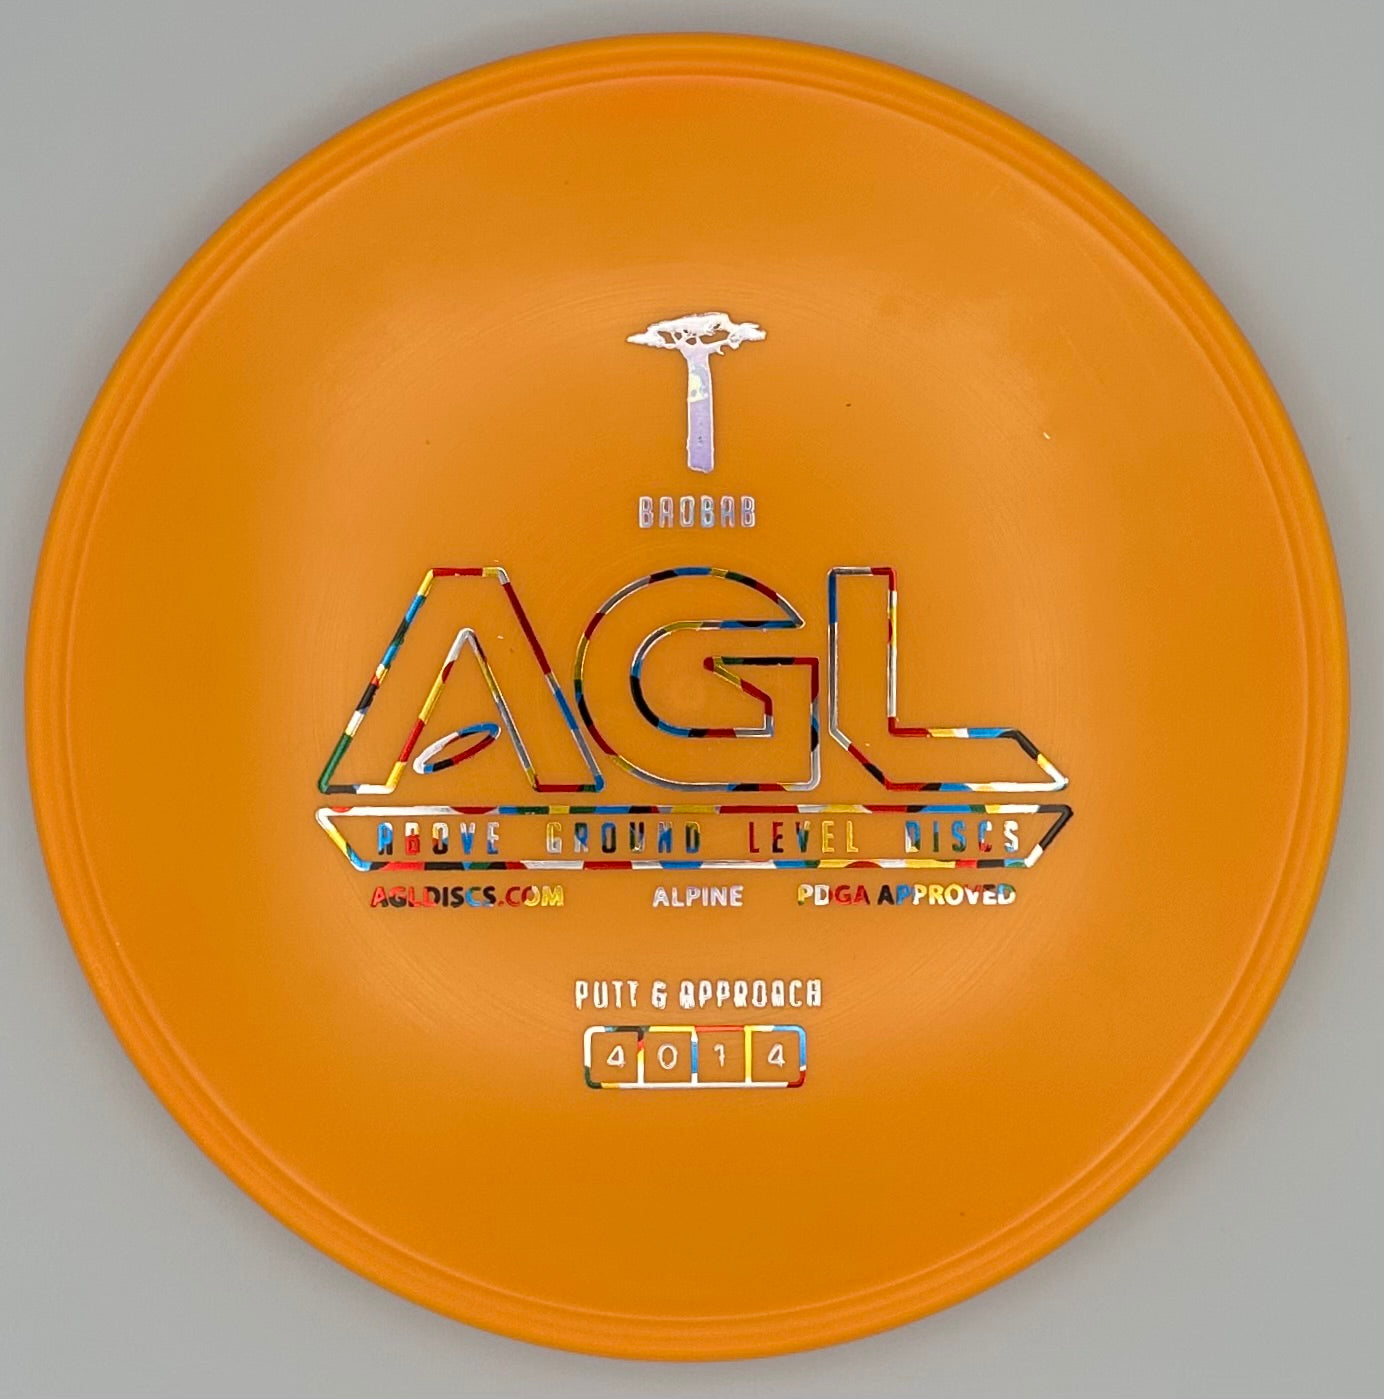 AGL Discs - Soda Pop Orange Alpine Baobab (AGL Bar Stamp)